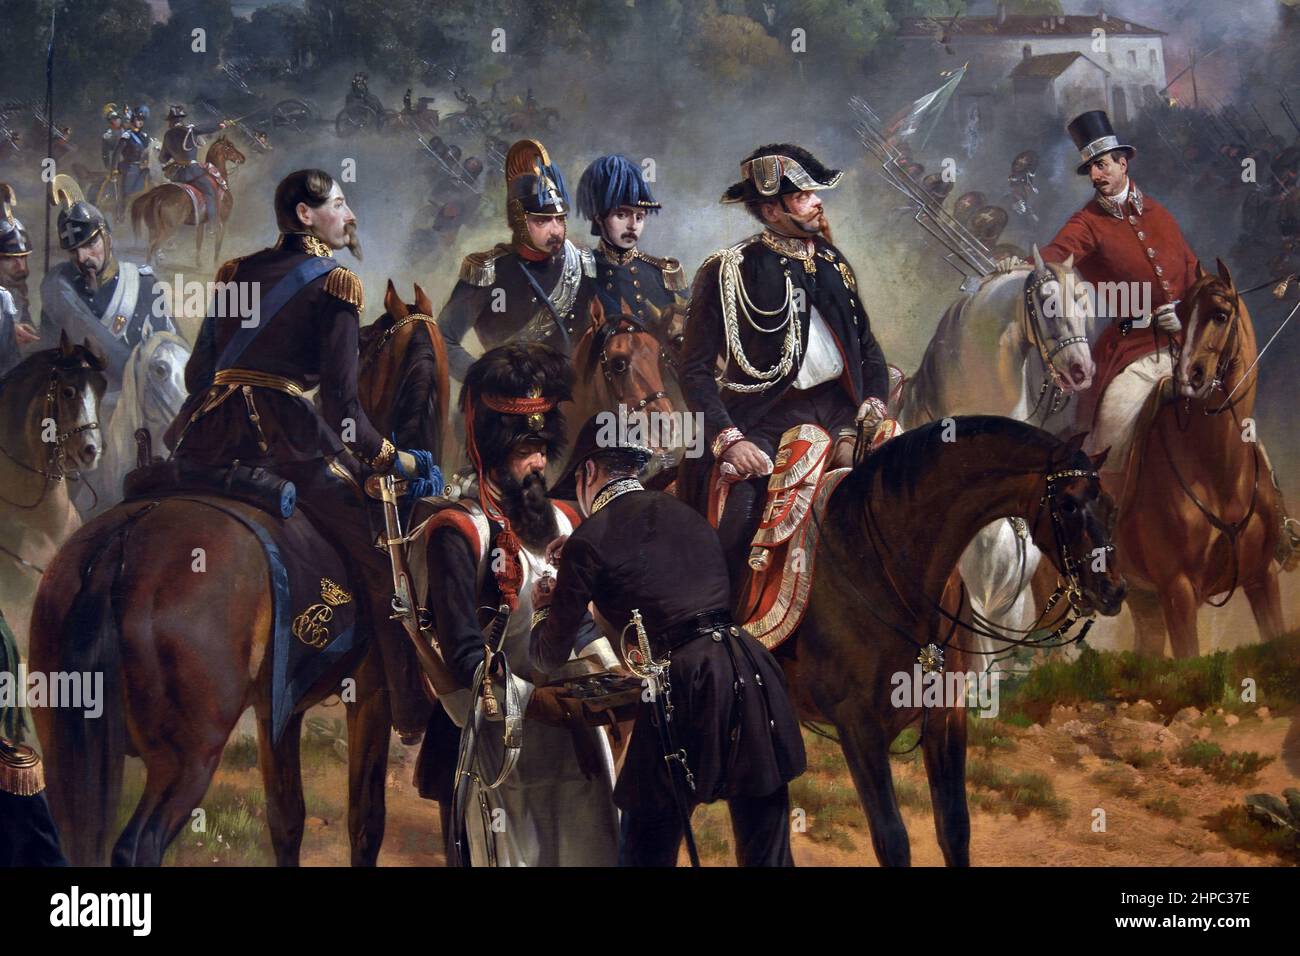 Bataille de Goito 1848 par le peintre Felice Cerruti Bauduc, (la bataille de Goito a été menée entre les piémontais et l'armée autrichienne le 30 mai 1848, au cours de la première guerre d'indépendance italienne. L'armée piémontaise a gagné la bataille ) Italie ( le moment de la contre-attaque piémontaise à la bataille de Goito, vu de l'arrière. ) Banque D'Images